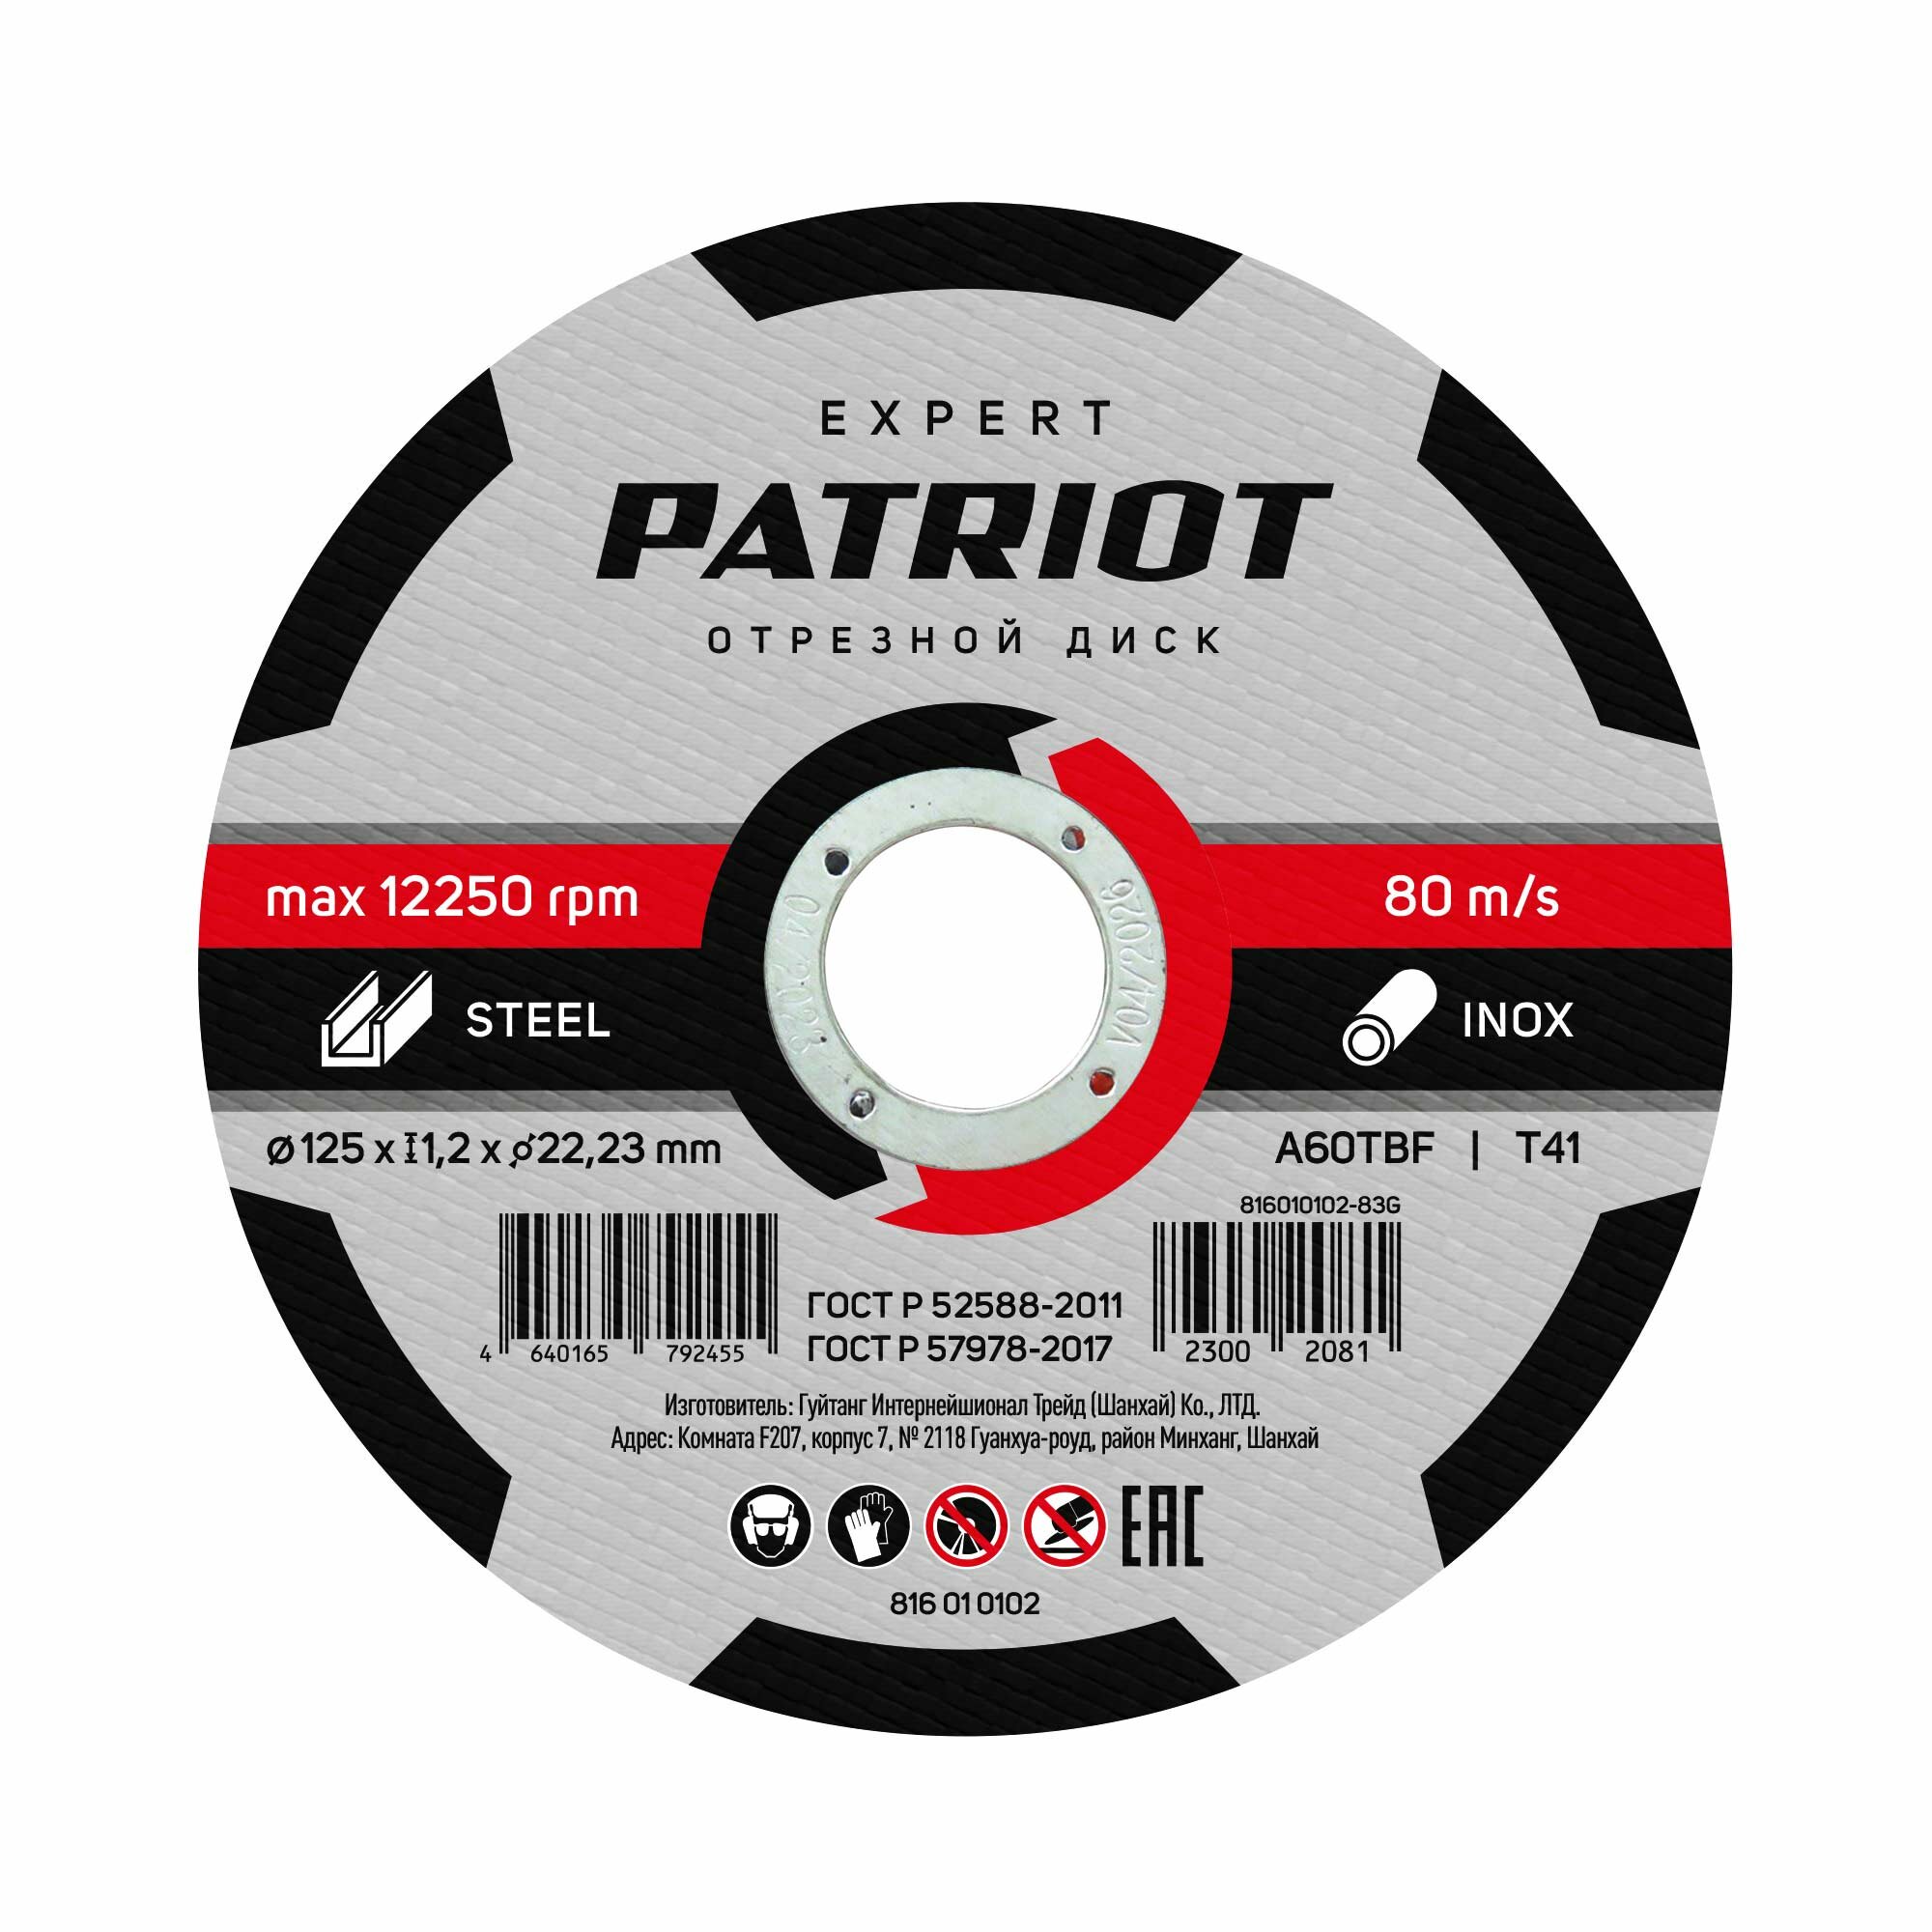 Patriot Диск абразивный отрезной EXPERT 1251,222,23 по металлу 816010102